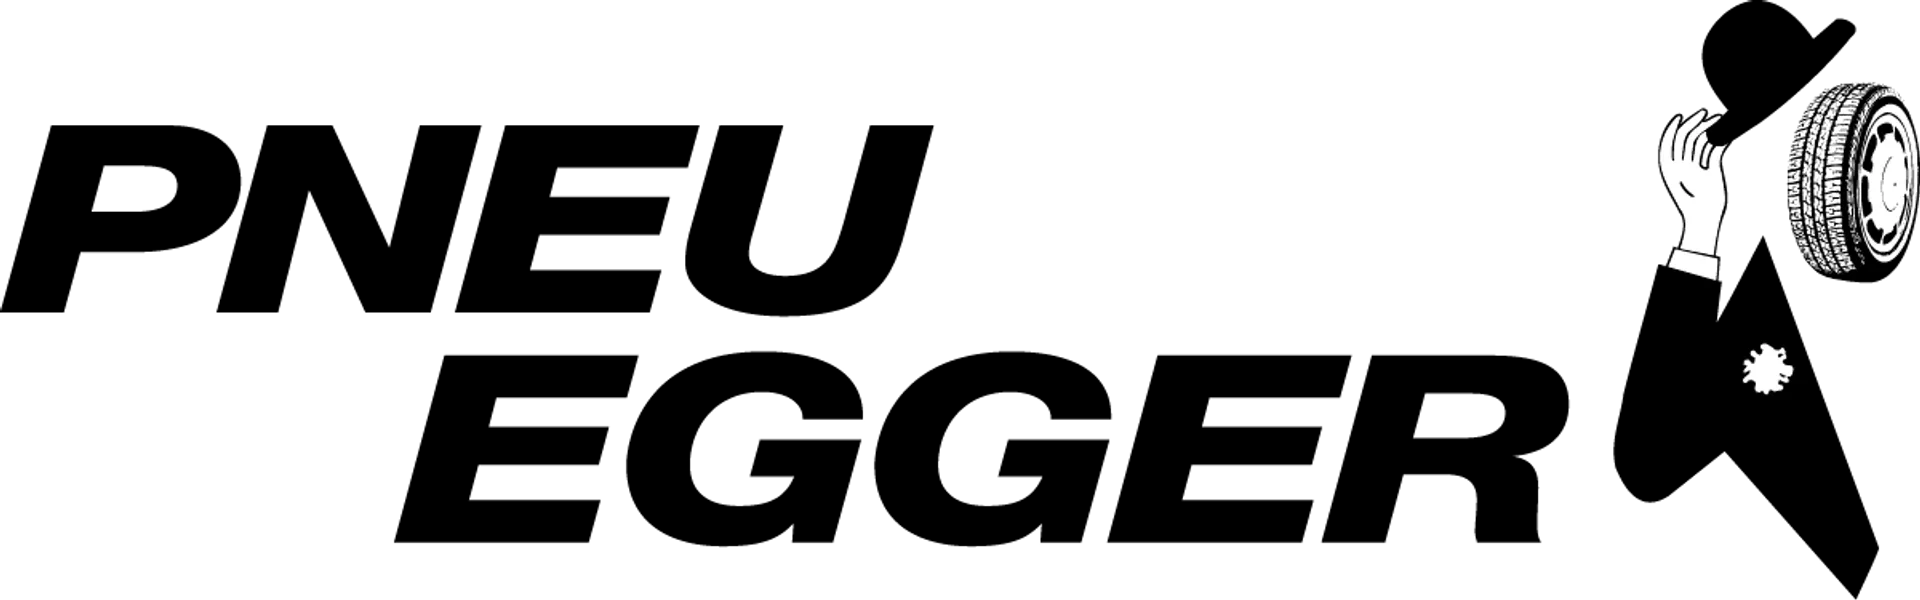 PNEU EGGER logo